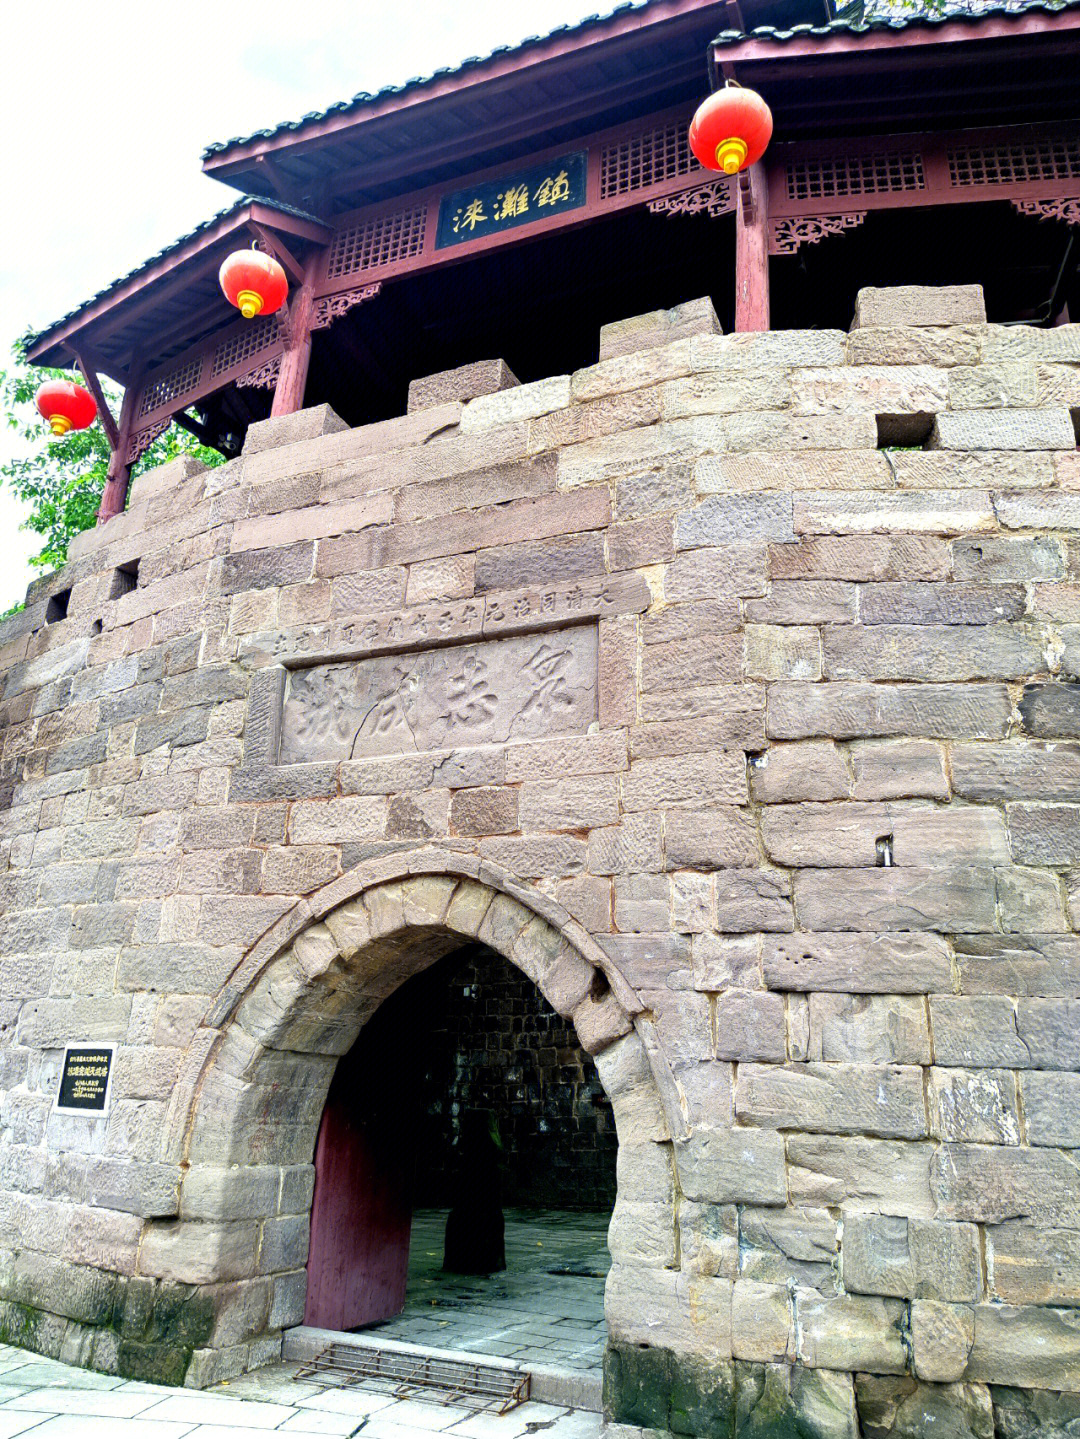 合川涞滩古镇,始建于北宋时期,西南地区唯一具有瓮城结构的古镇,一座